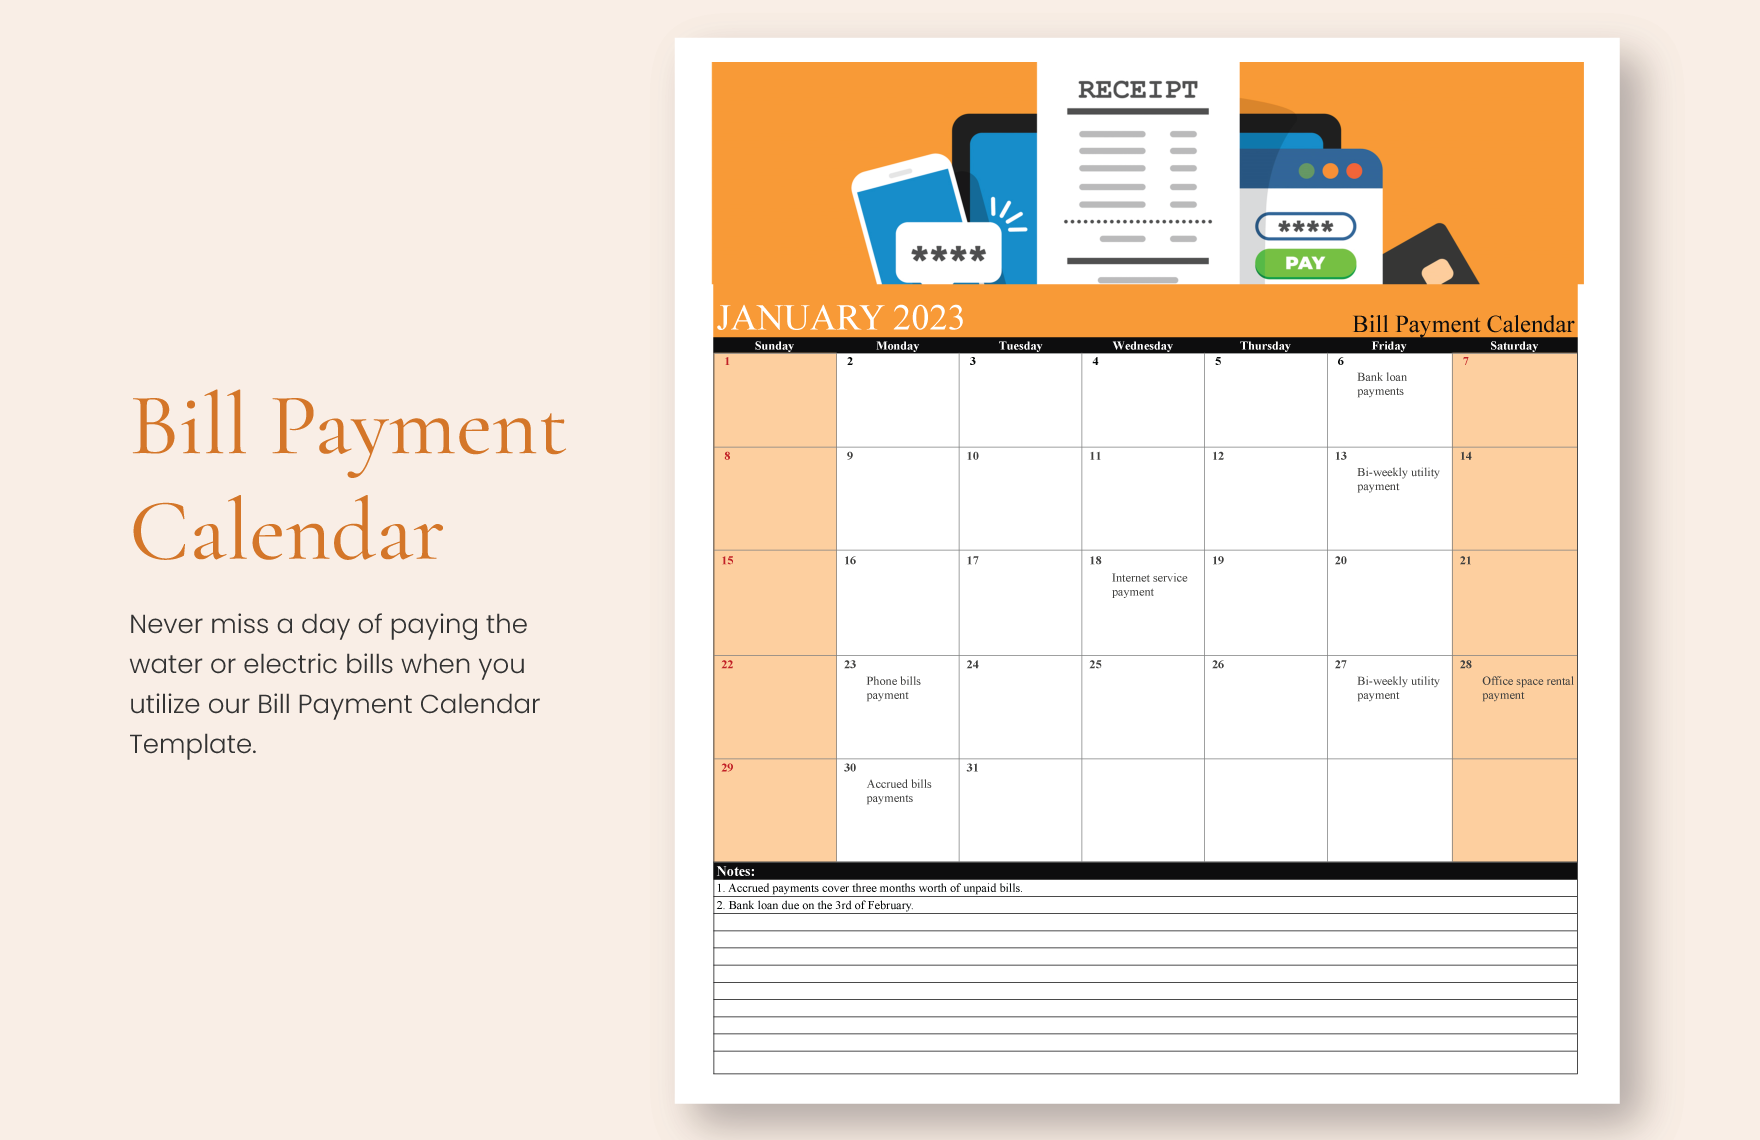 Bill Payment Calendar Google Sheets, Excel